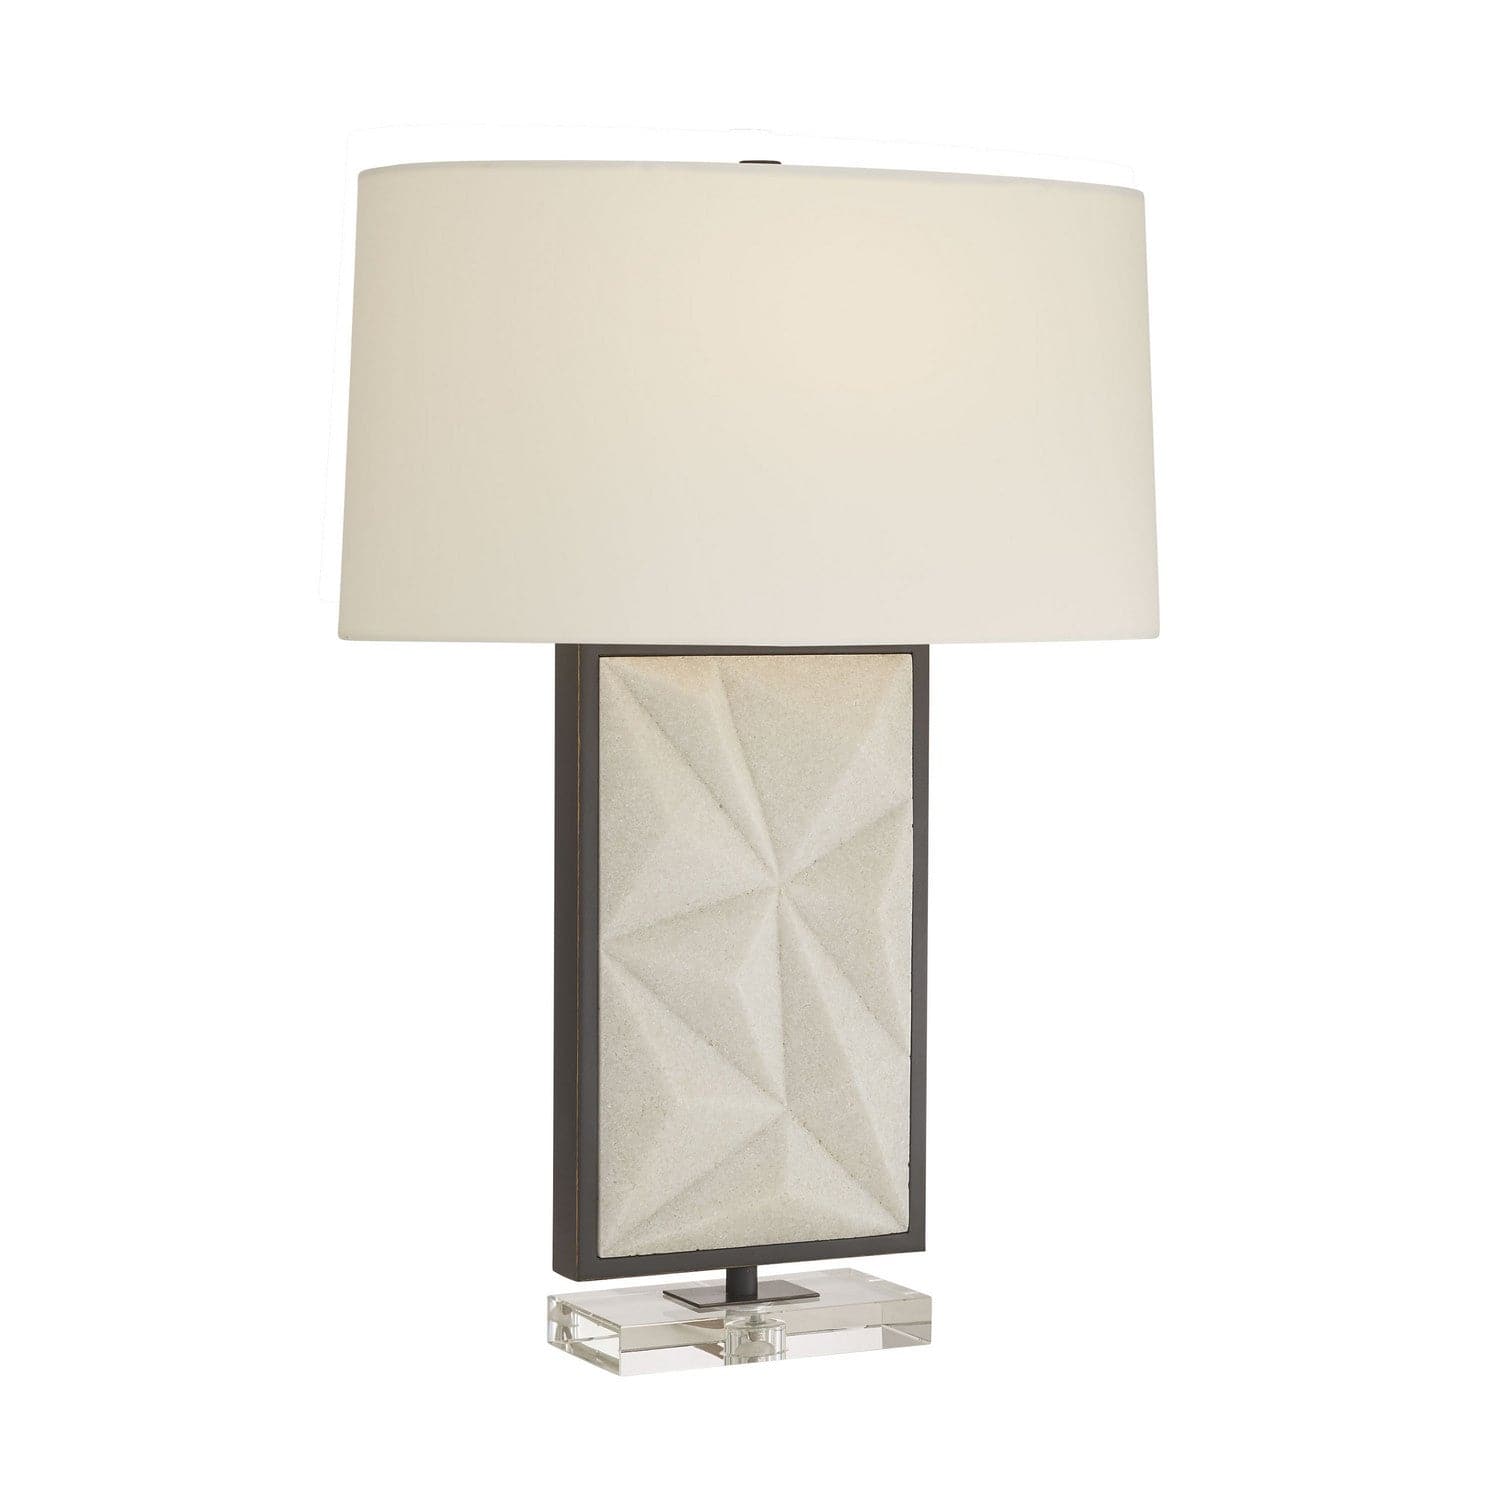 Arteriors - 49689-431 - One Light Table Lamp - Delta - White